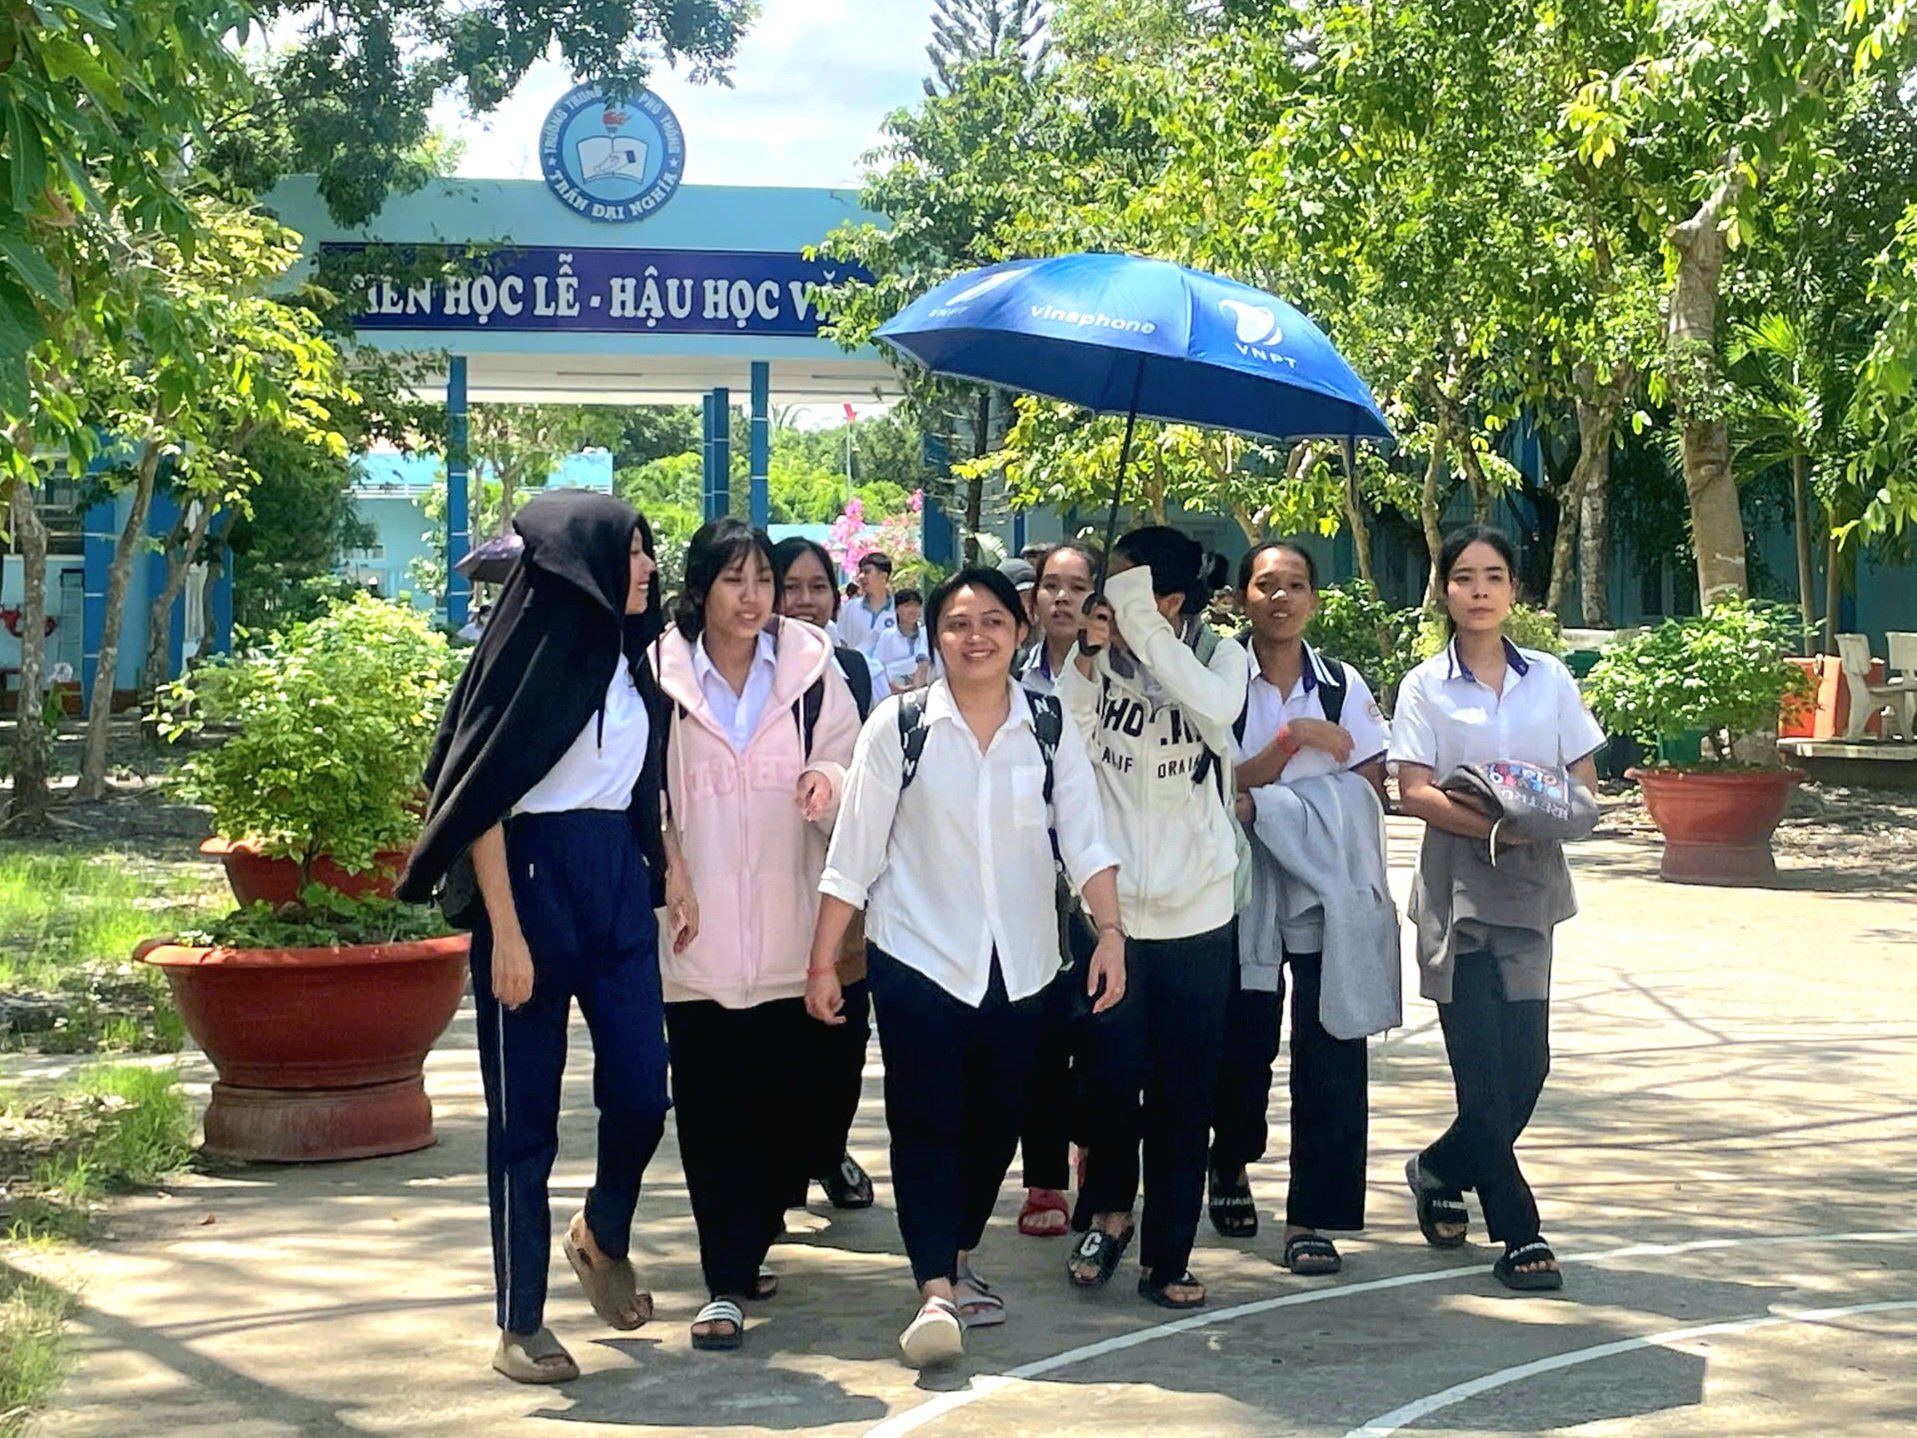 Các thí sinh dự thi tại điểm thi Trường THPT Trần Đại Nghĩa tự tin, vui vẻ tham gia dự thi.